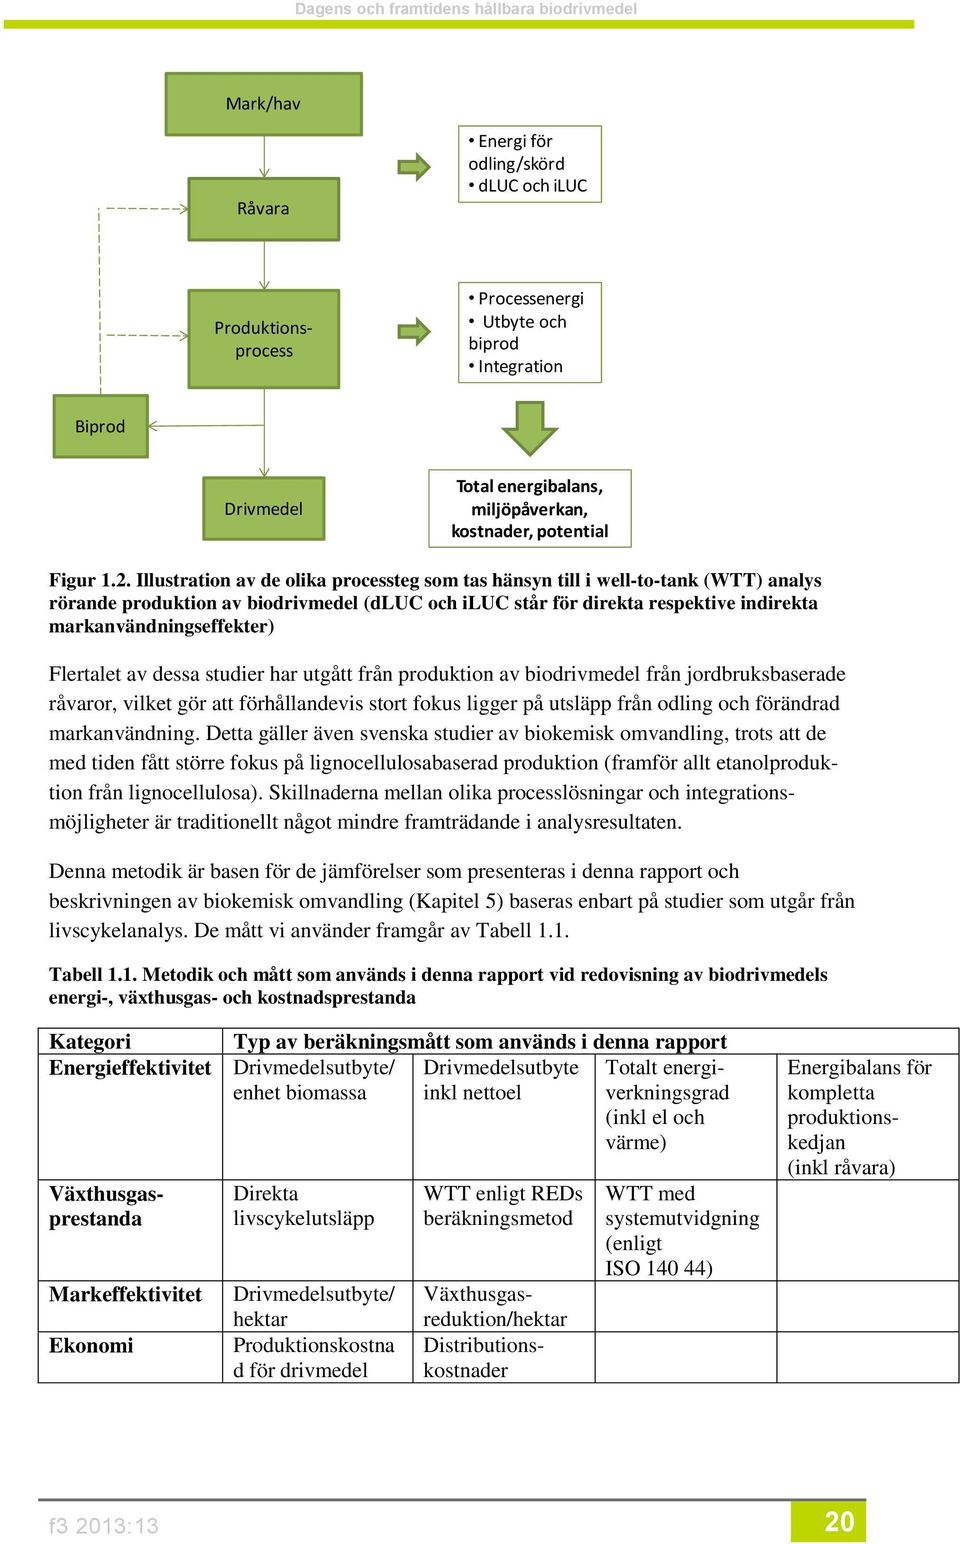 Illustration av de olika processteg som tas hänsyn till i well-to-tank (WTT) analys rörande produktion av biodrivmedel (dluc och iluc står för direkta respektive indirekta markanvändningseffekter)